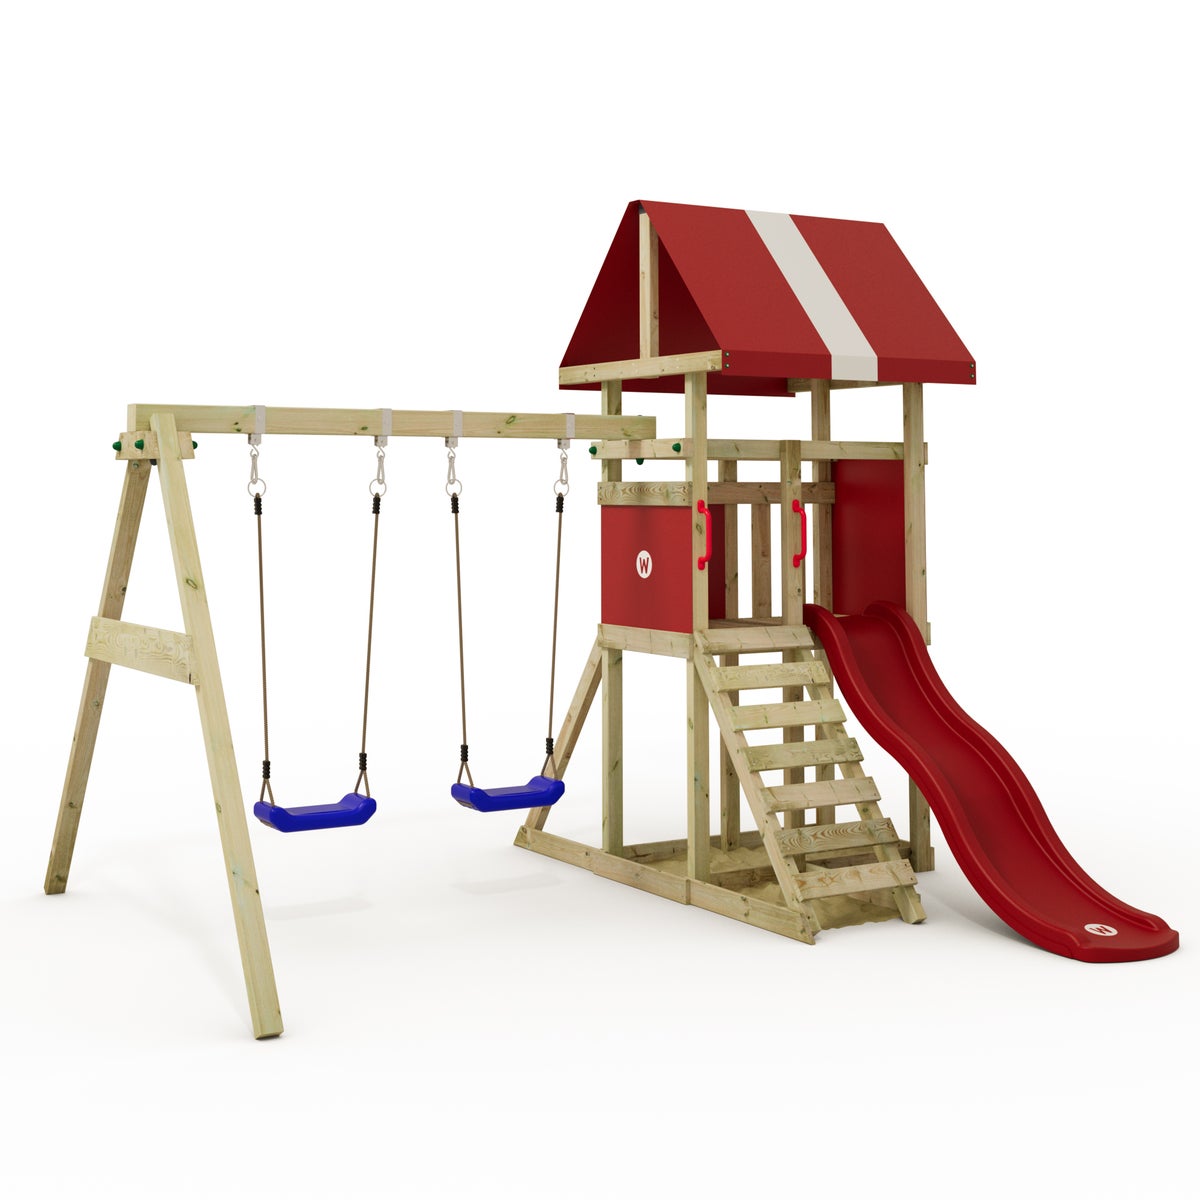 WICKEY Spielturm Klettergerüst DinkyHouse mit Schaukel und Rutsche, Kletterturm mit Sandkasten, Leiter und Spiel-Zubehör – rot